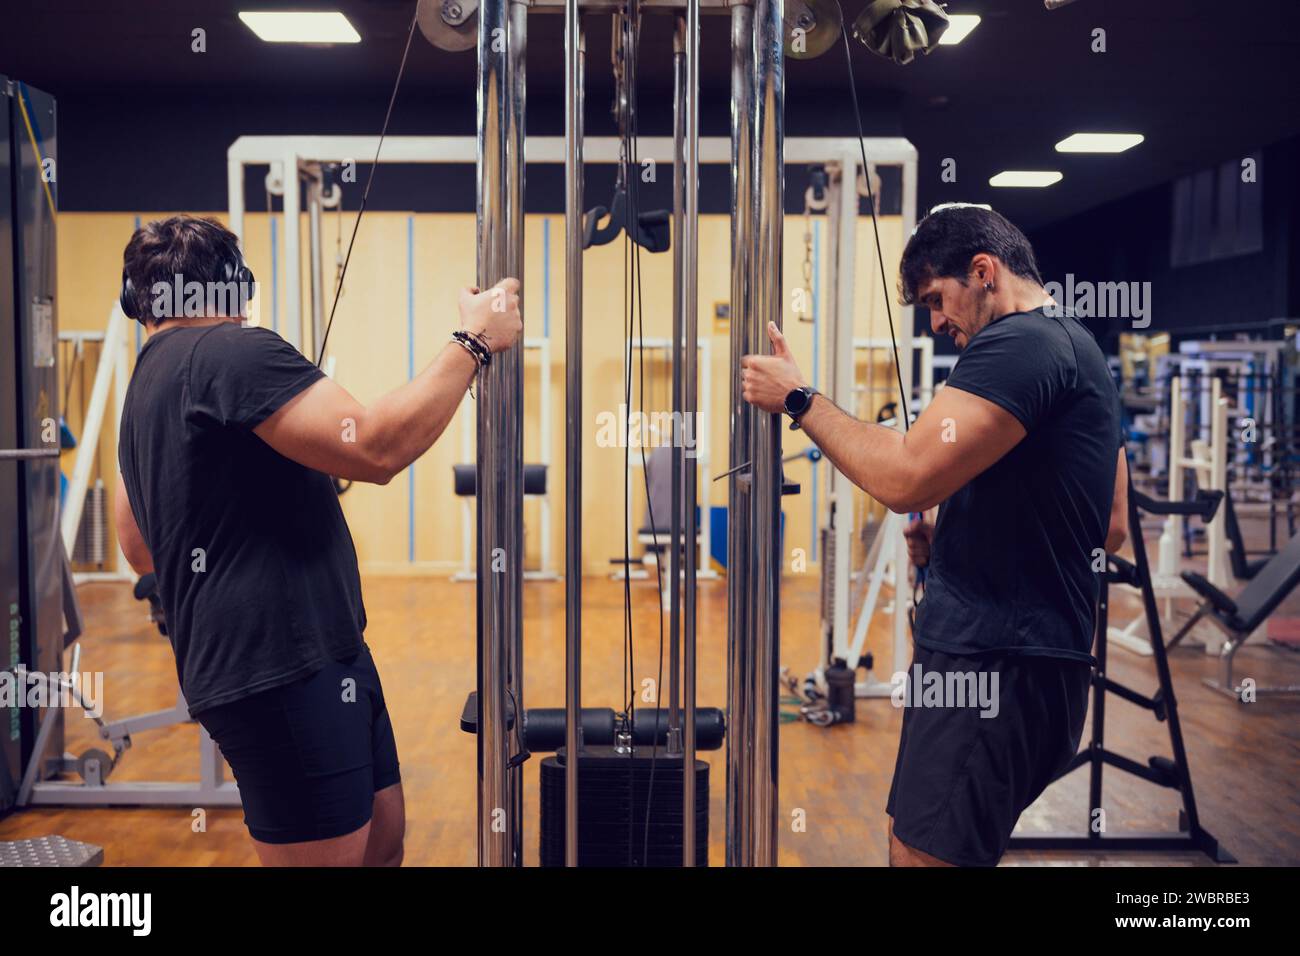 Deux hommes sont intensément concentrés sur soulever des poids à la salle de gym Banque D'Images